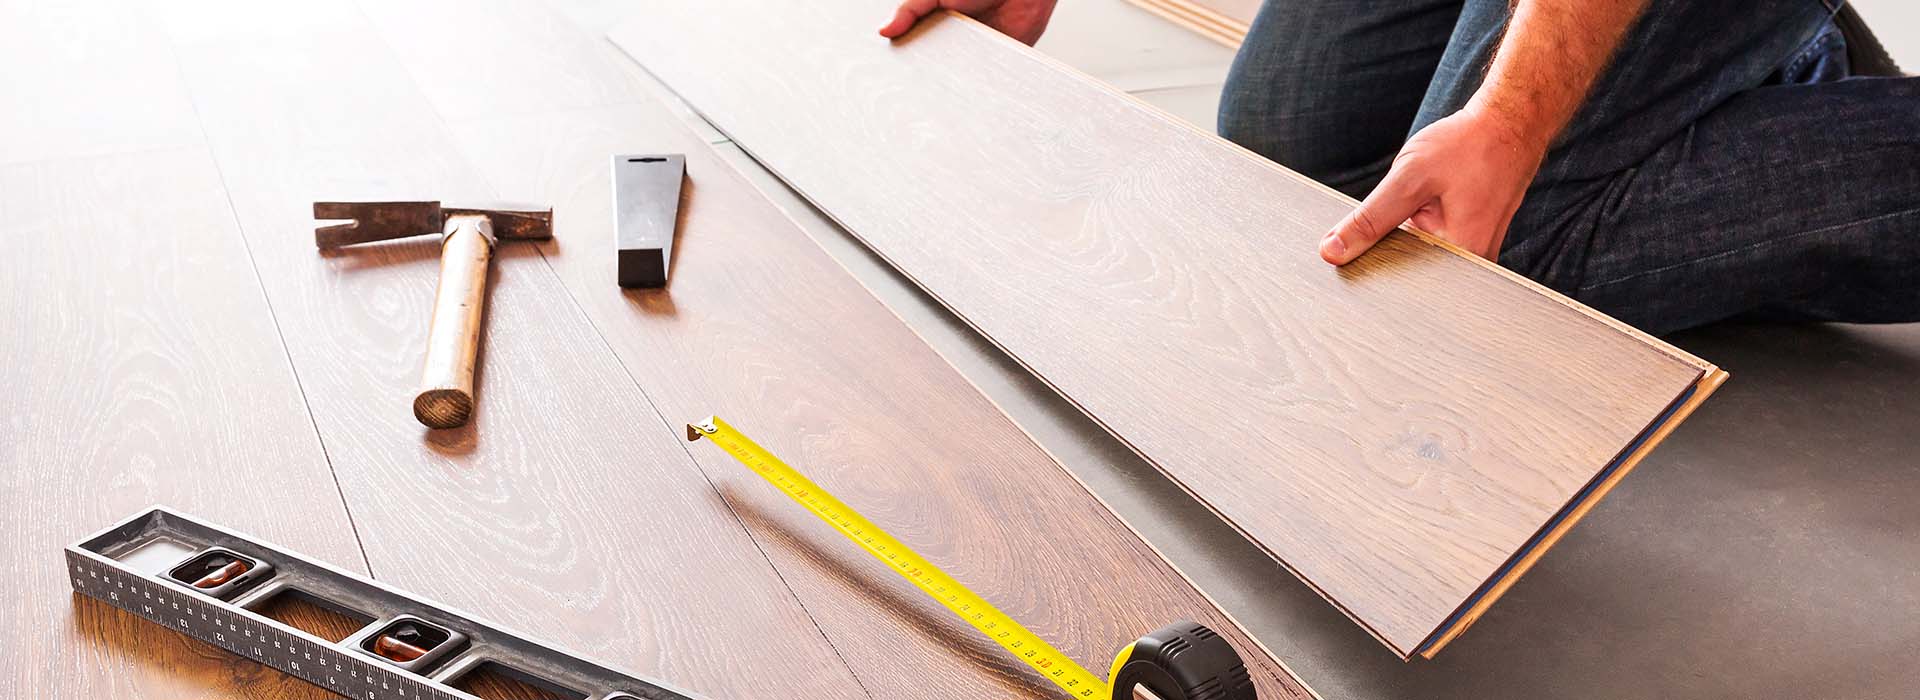 Englewood Floors and more - team member installing new luxury vinyl floors